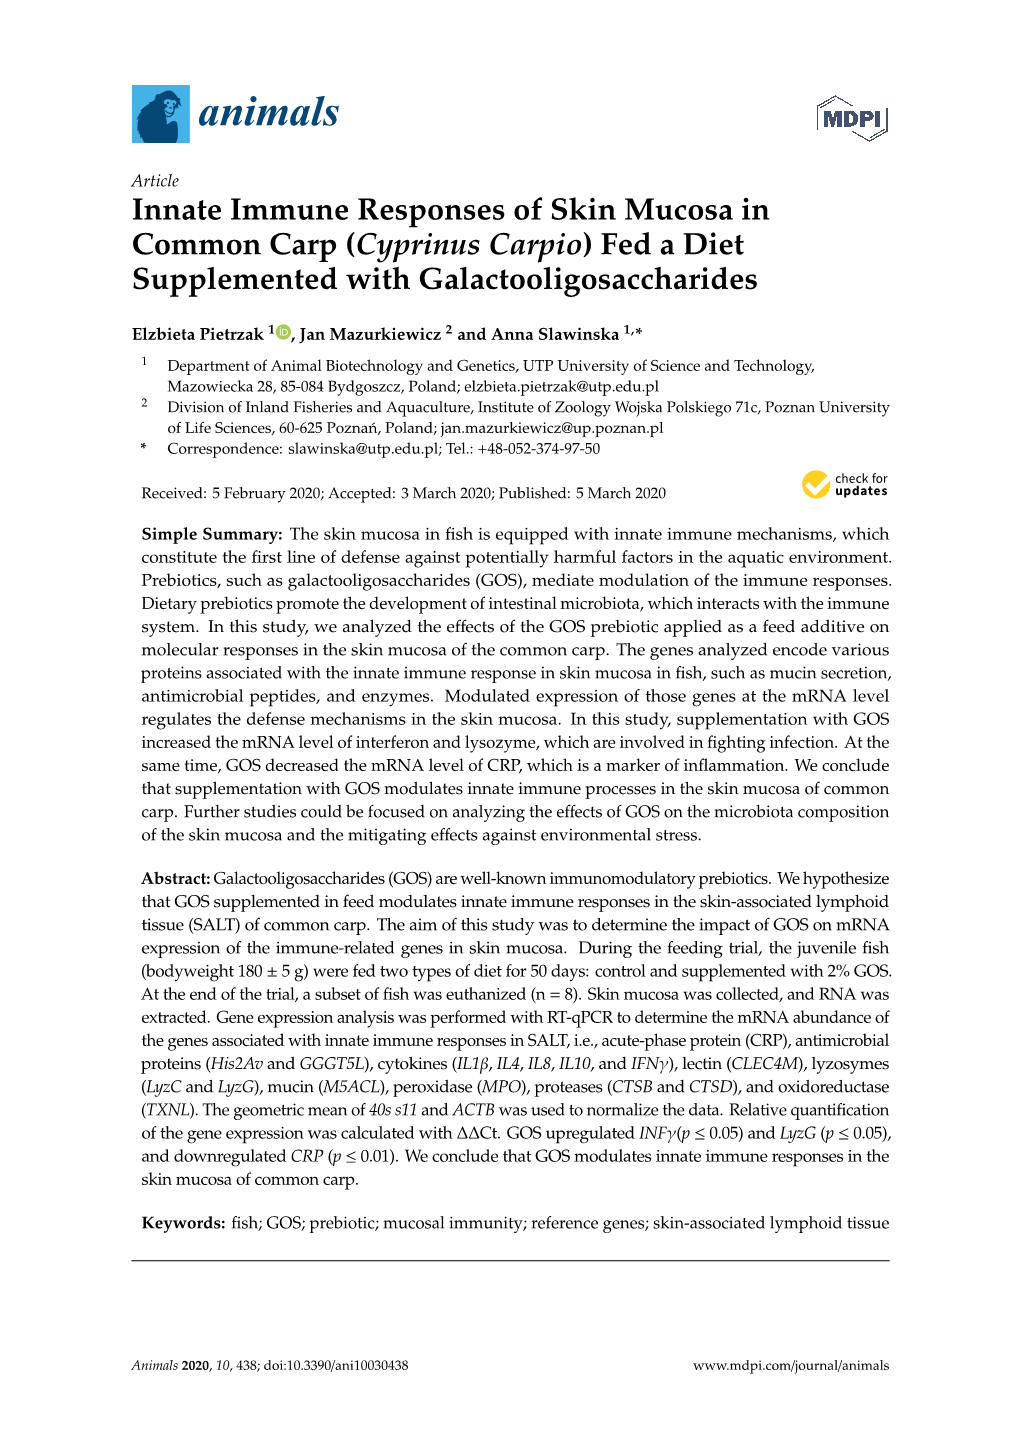 Innate Immune Responses of Skin Mucosa in Common Carp (Cyprinus Carpio) Fed a Diet Supplemented with Galactooligosaccharides